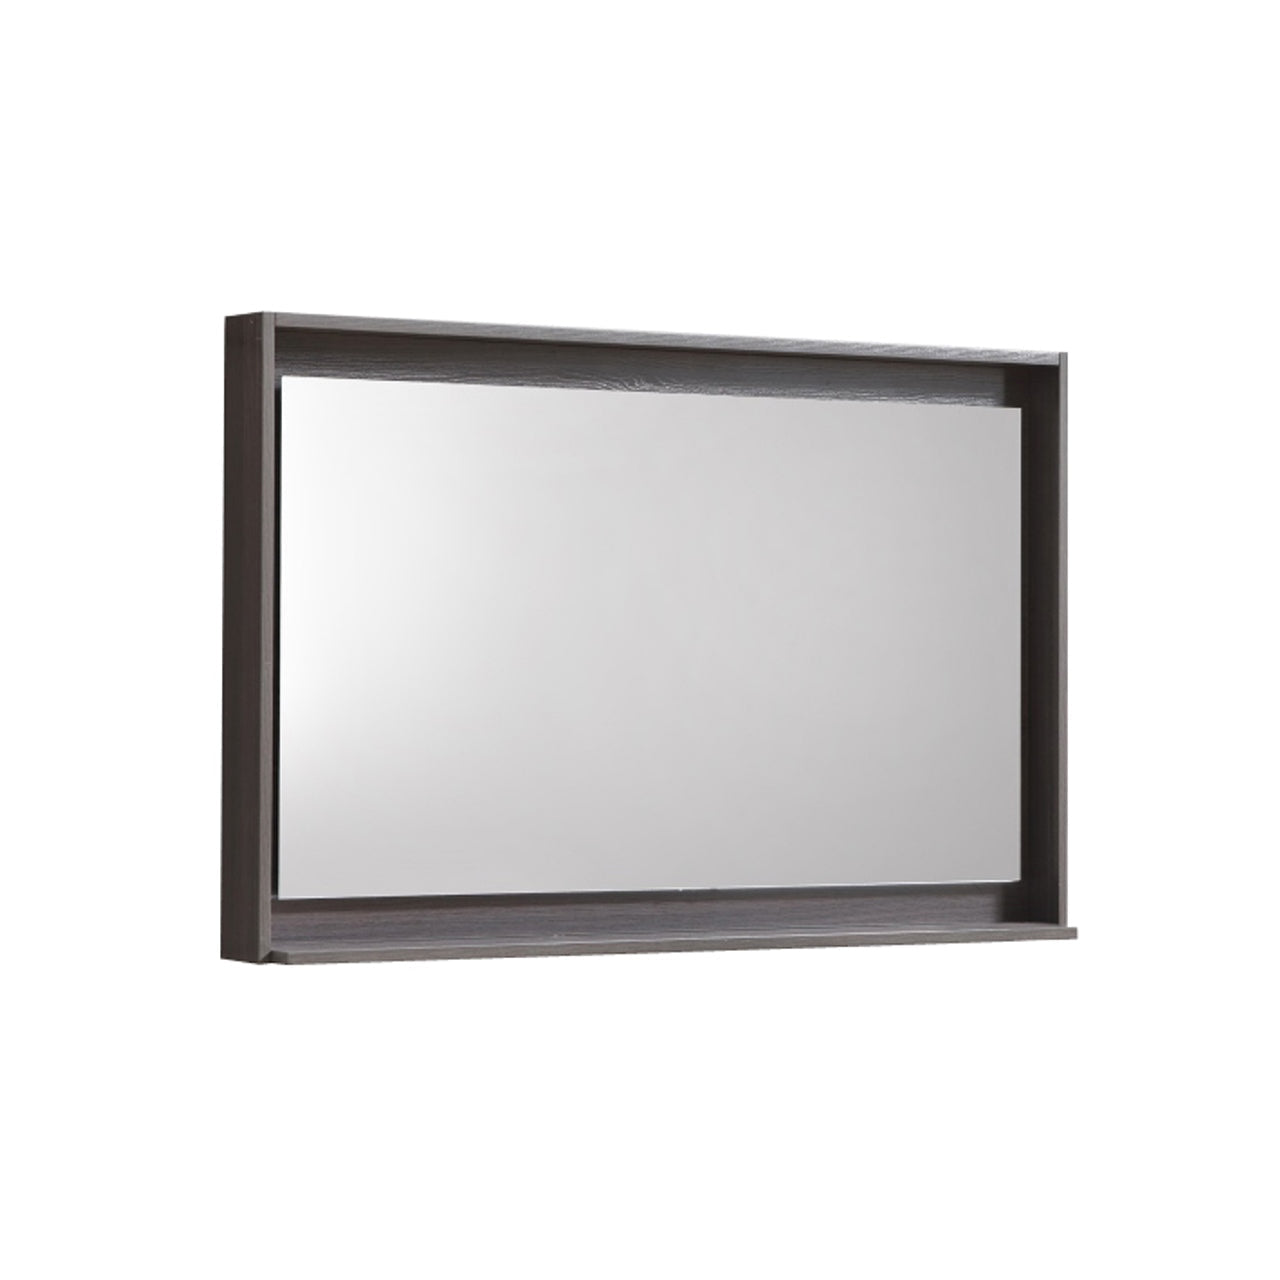 Bosco 36" Framed Mirror With Shelve - Bhdepot 